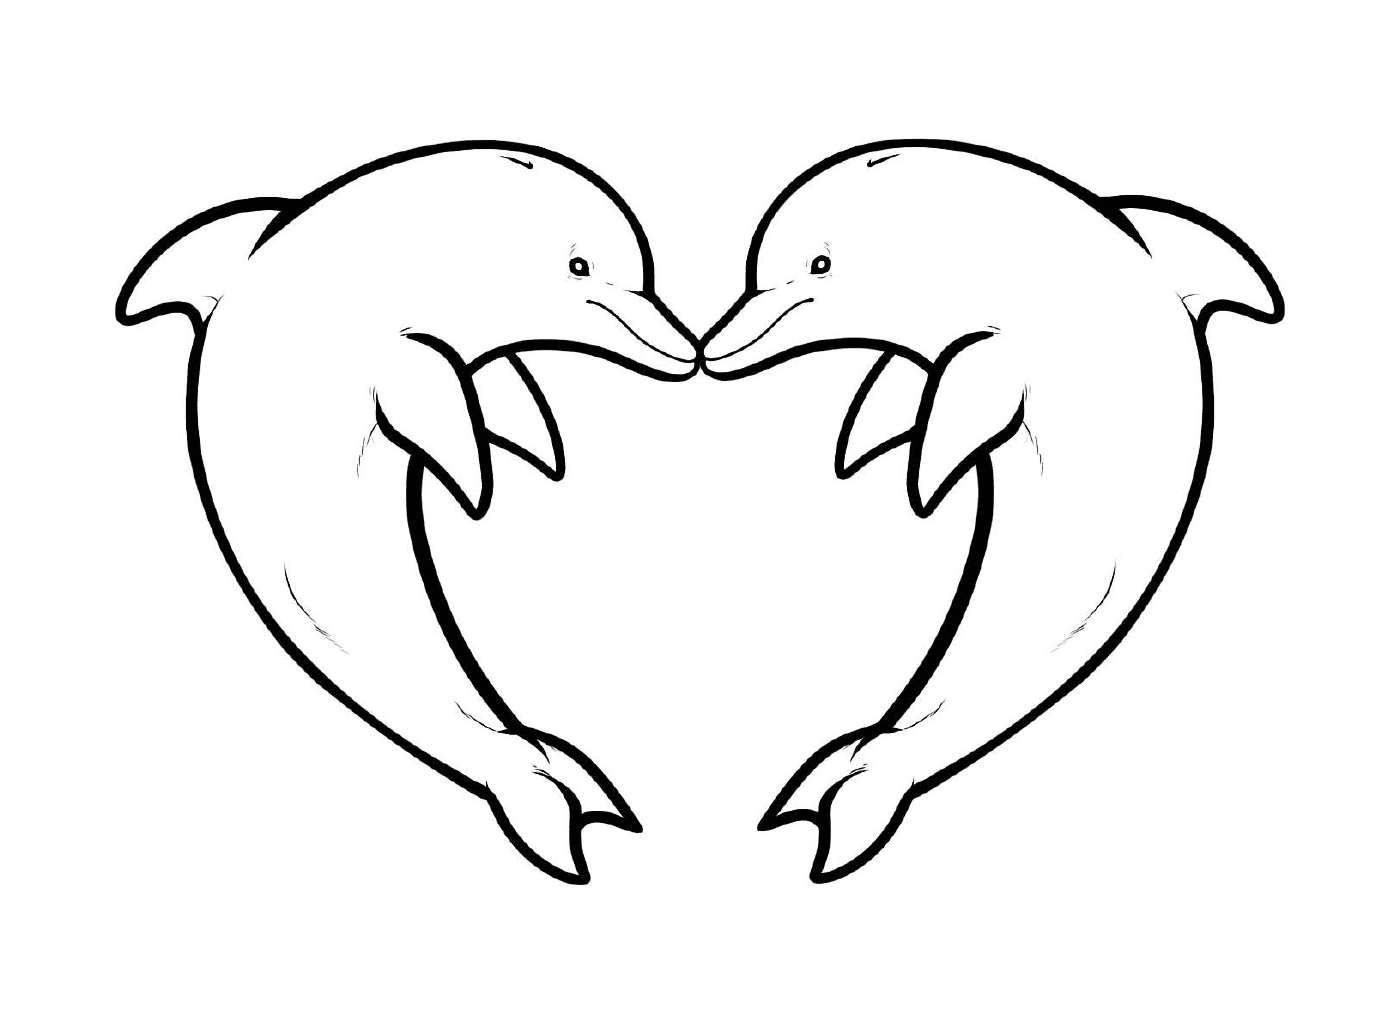  zwei Delphine bilden die Form eines Herzens 